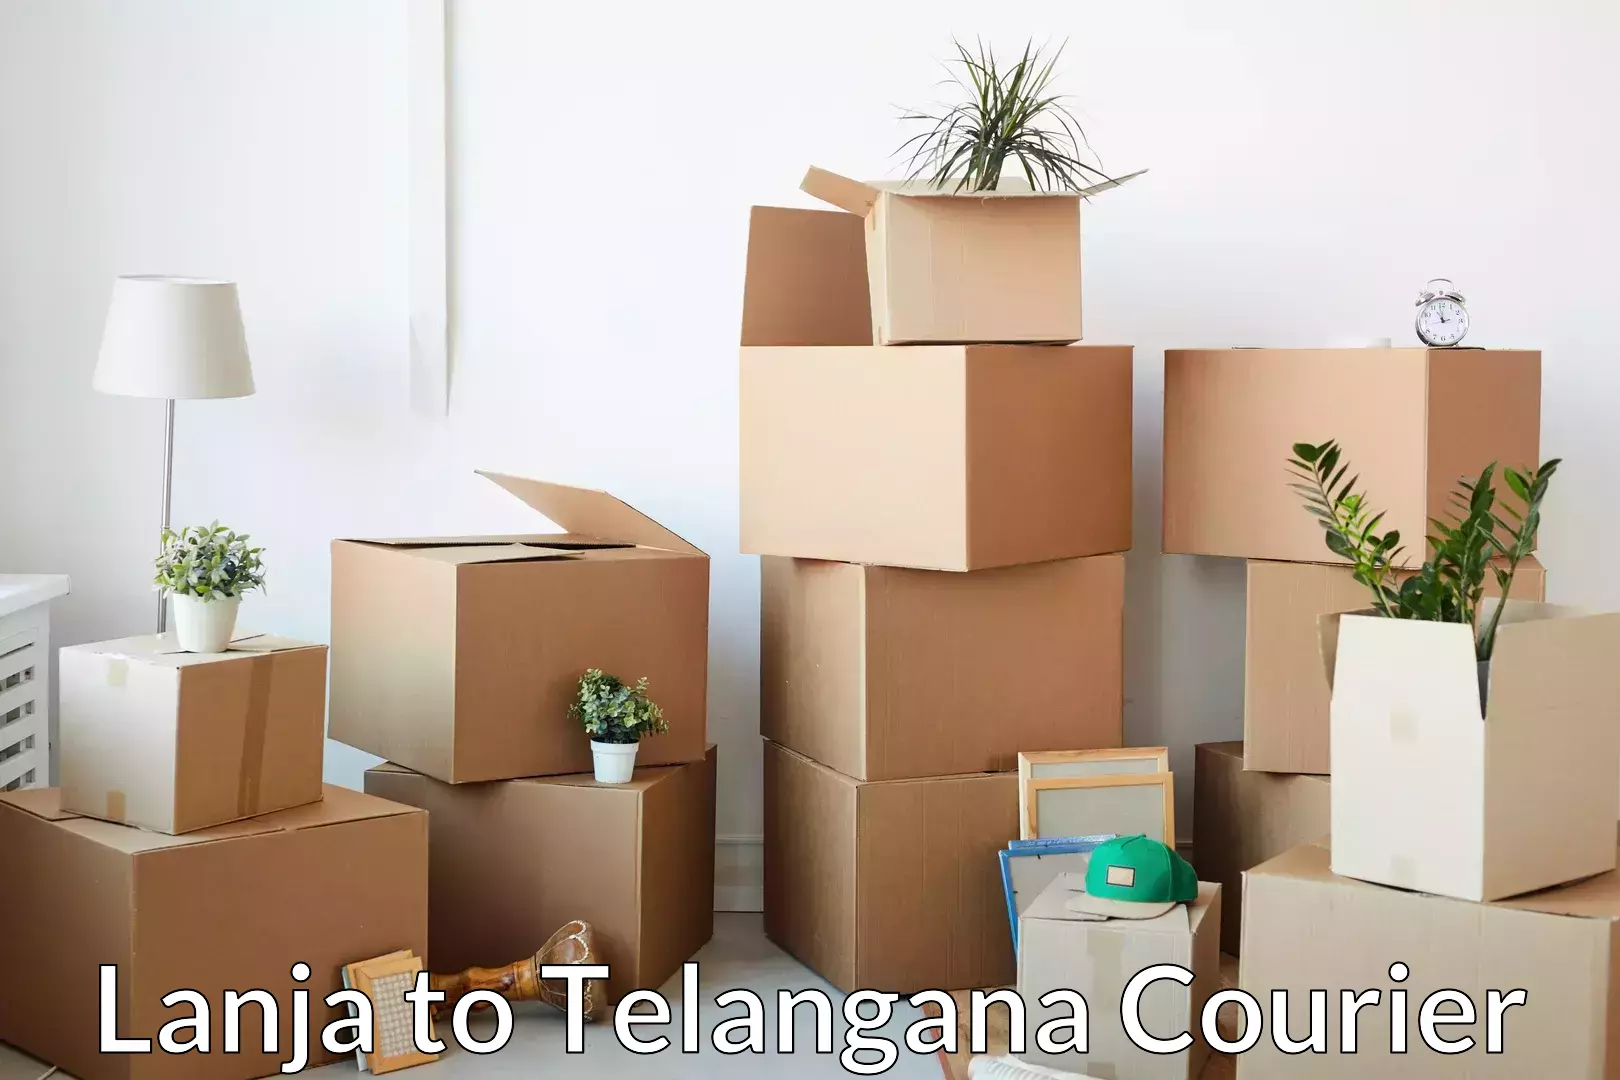 Household moving experts Lanja to Telangana